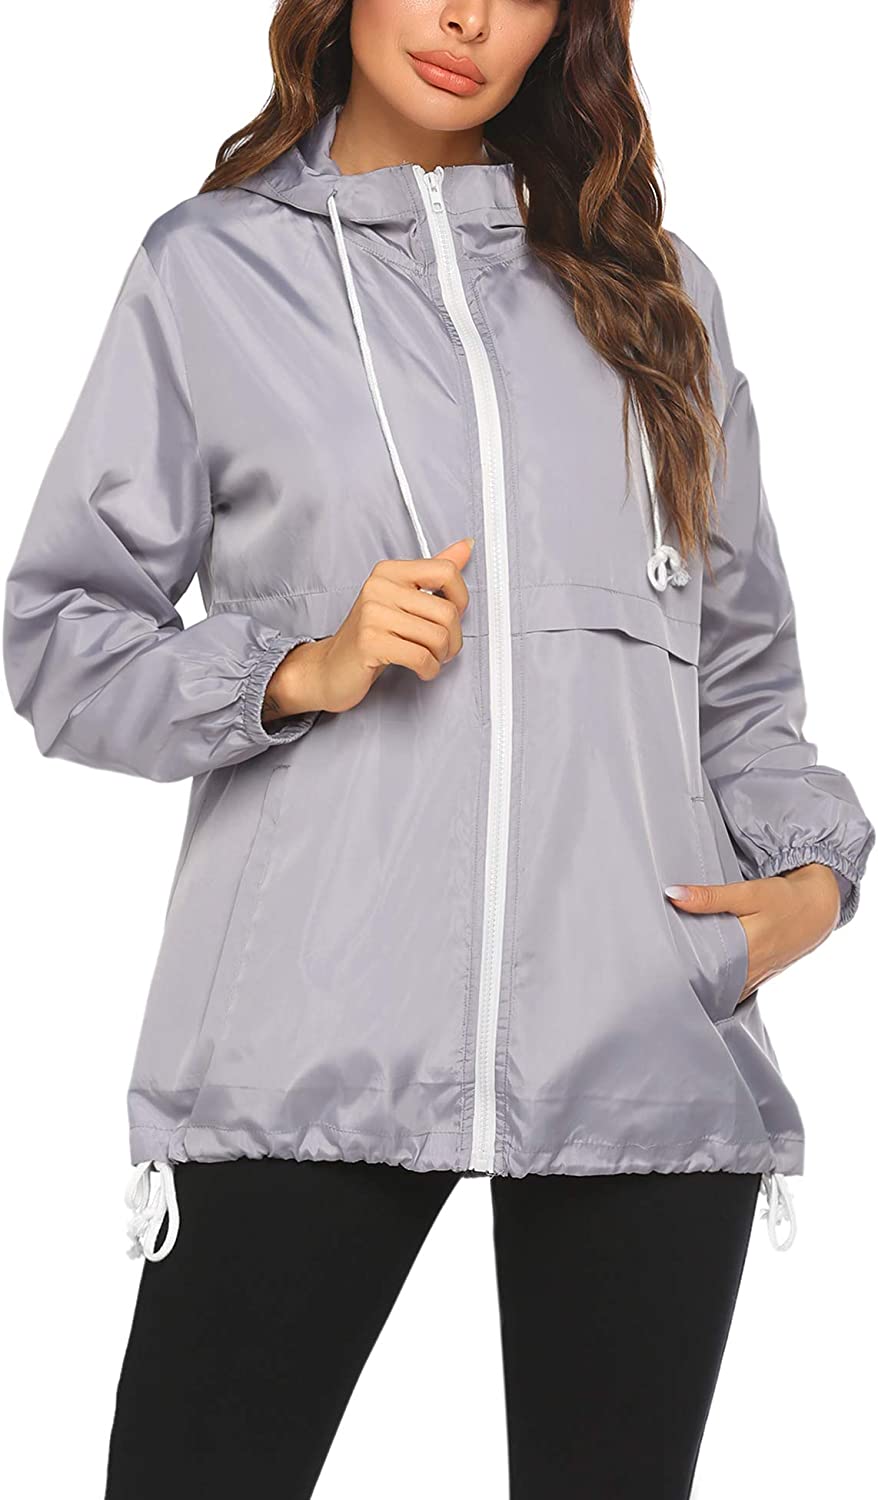 Beyove Women's Waterproof Raincoat Lightweight Rain Jacket Hooded Windbreaker wi